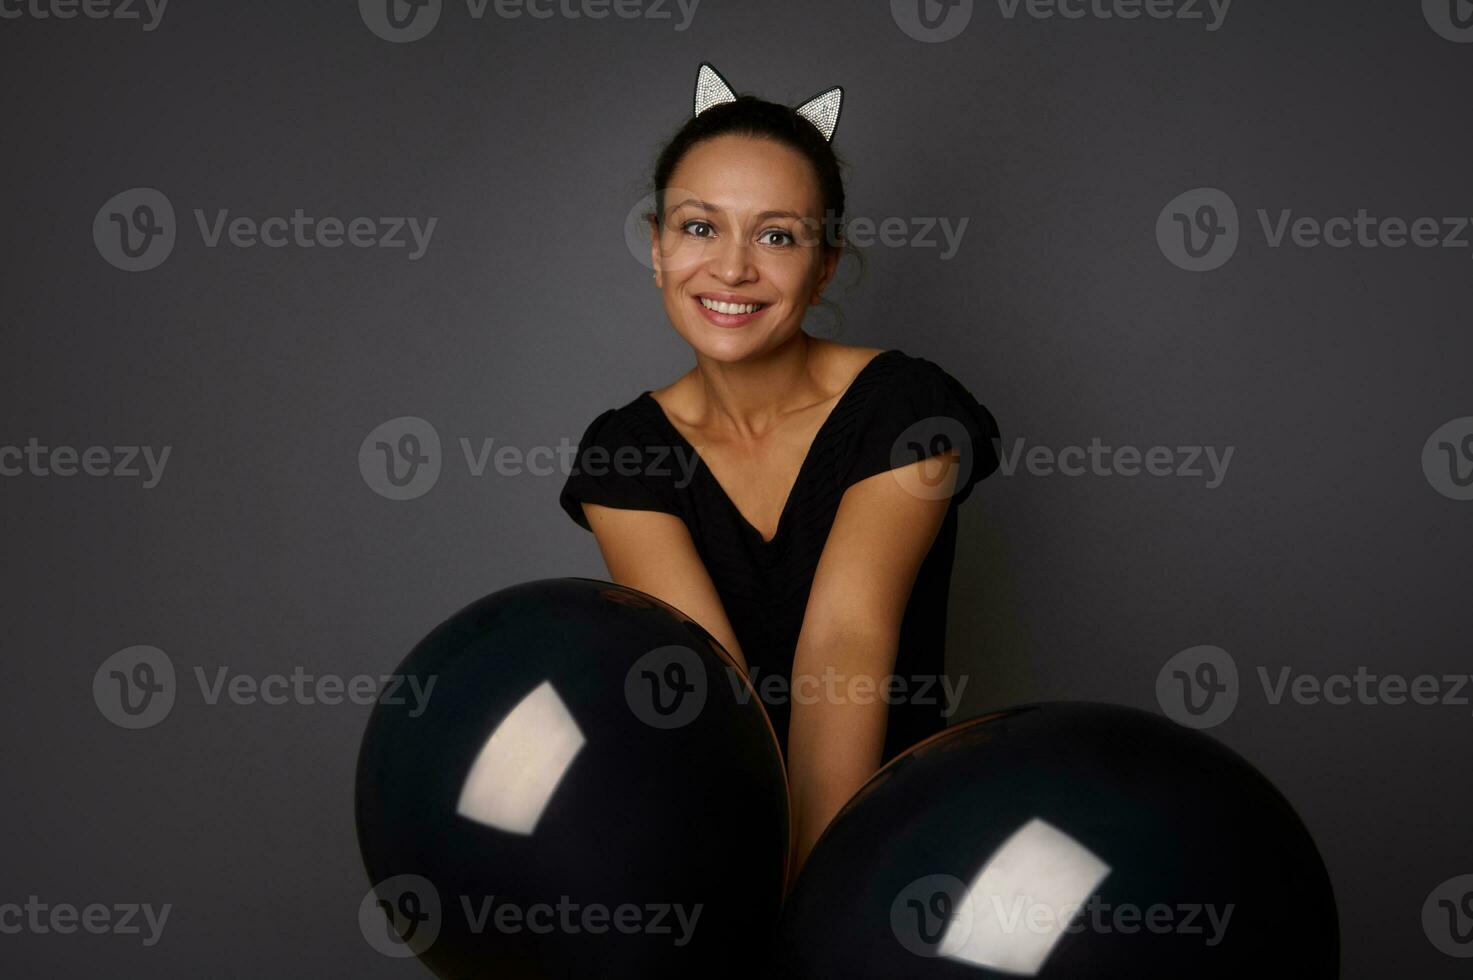 Latijns Amerikaans mooi vrouw gekleed in zwart, vervelend hoepel met kat oren, glimlacht toothy glimlach houdt zwart lucht ballen in voorkant van haar, looks Bij camera tegen grijs achtergrond. halloween, zwart vrijdag foto